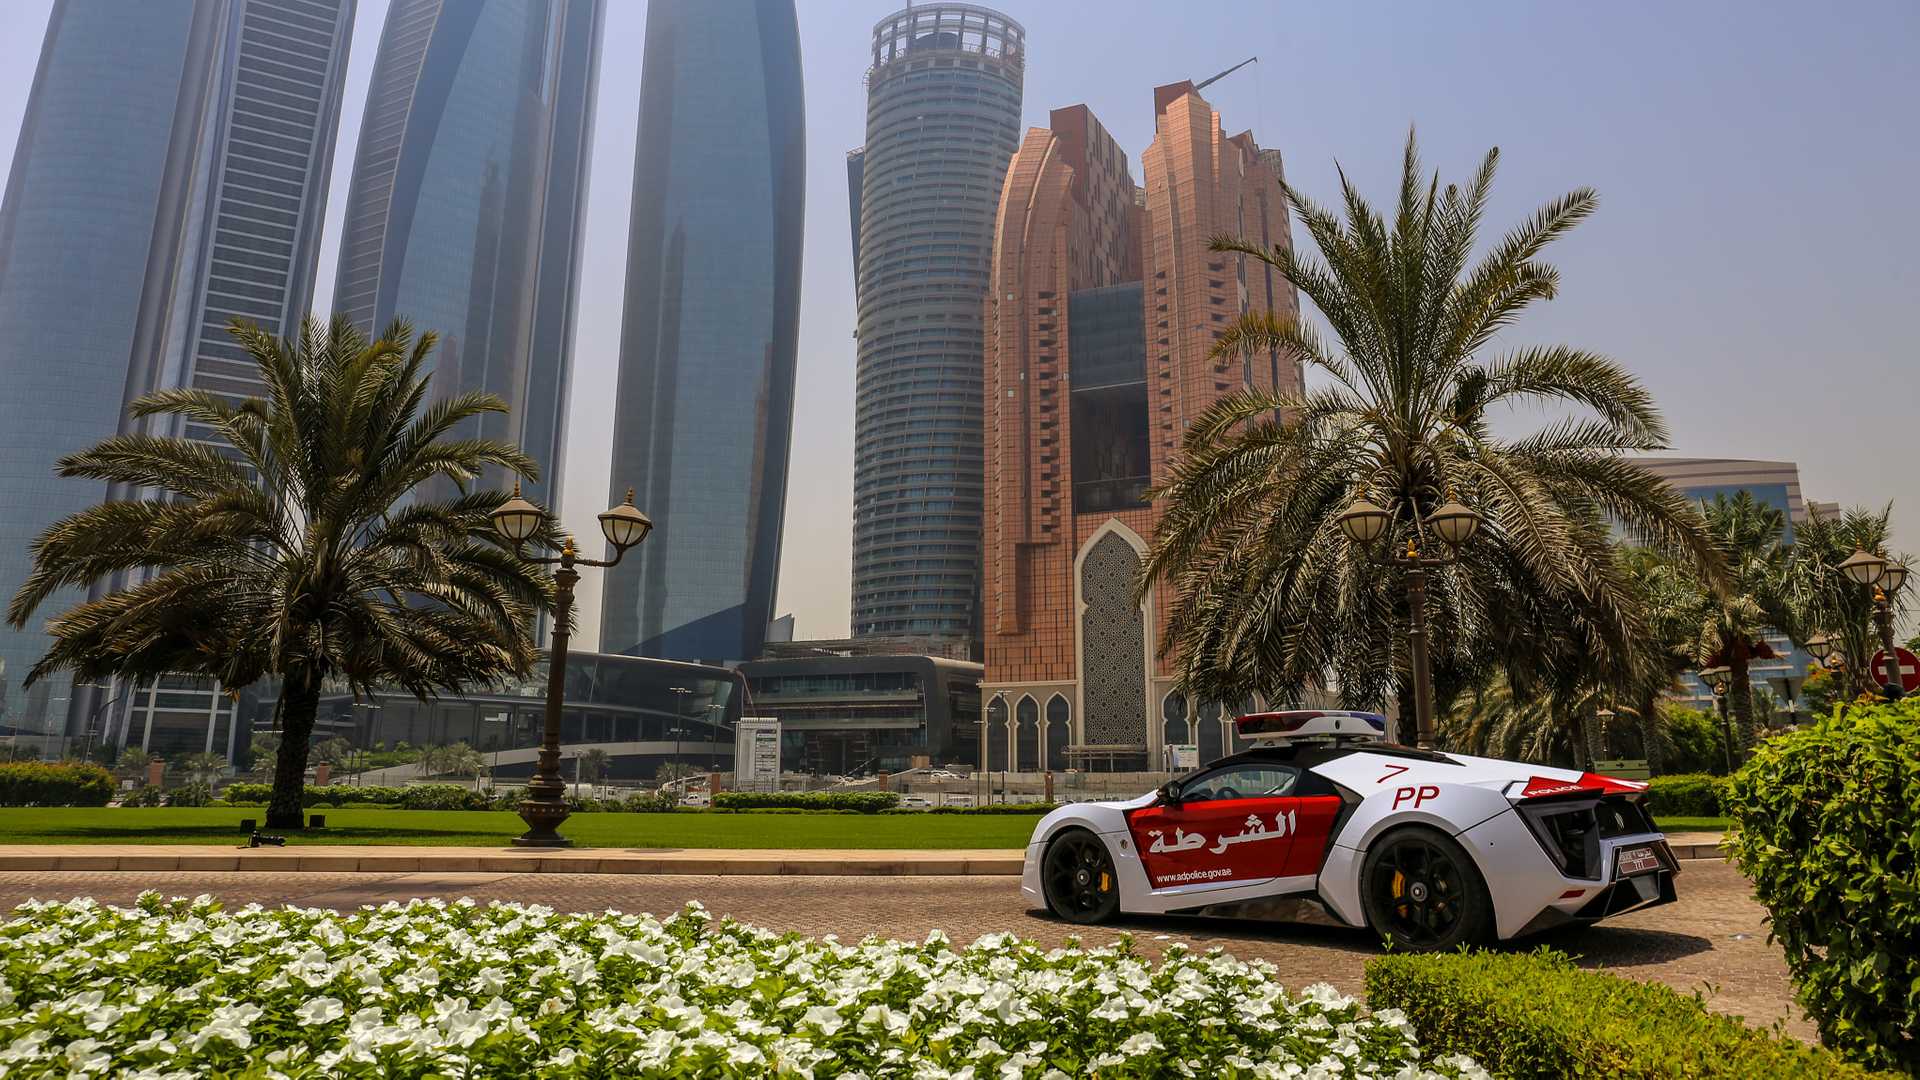 Abu Dhabi Police
